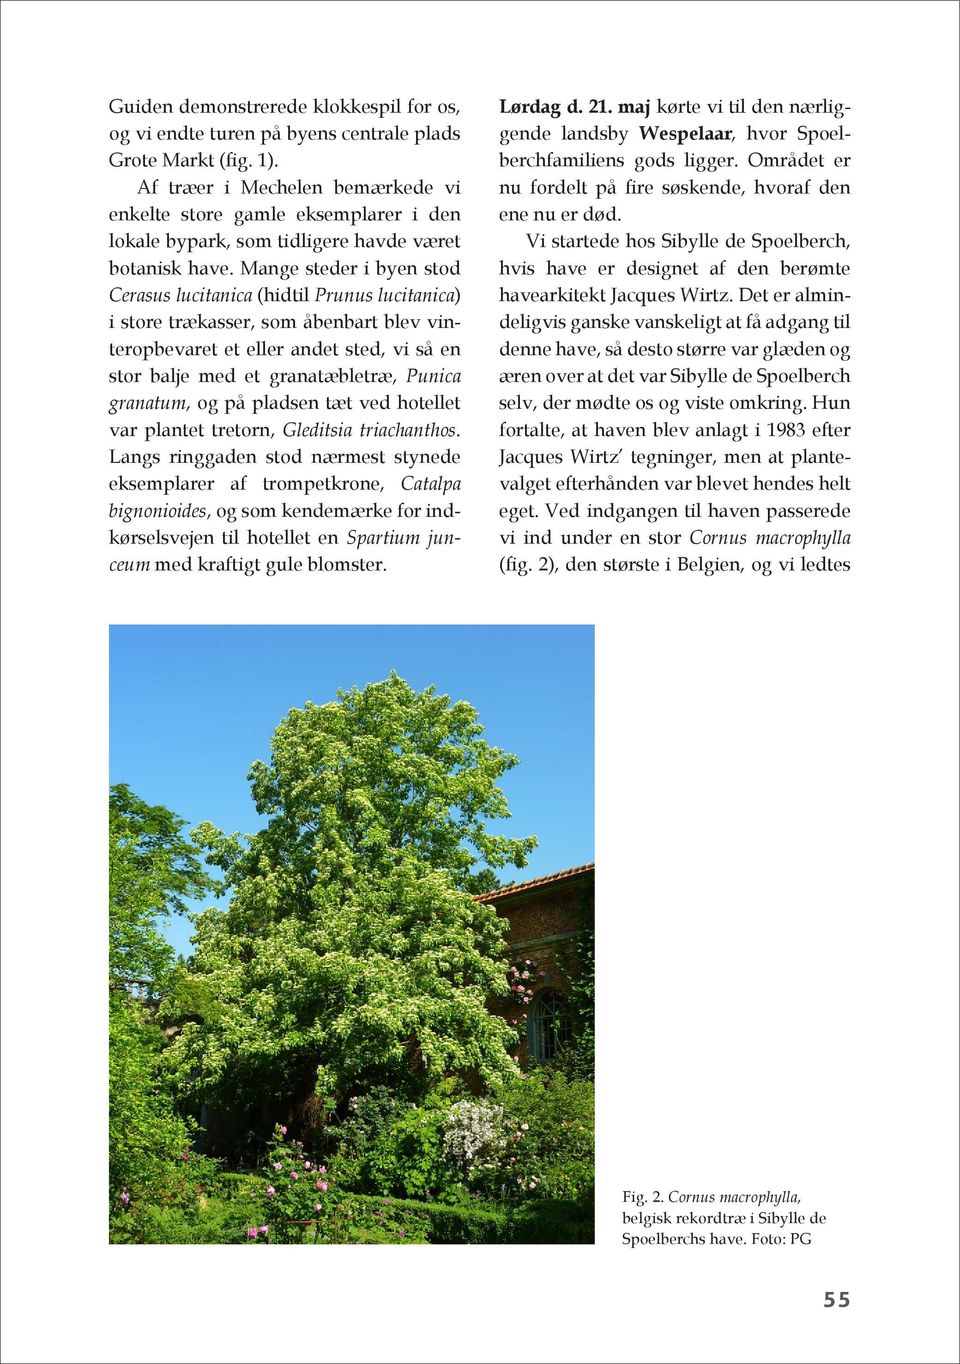 Mange steder i byen stod Cerasus lucitanica (hidtil Prunus lucitanica) i store trækasser, som åbenbart blev vinteropbevaret et eller andet sted, vi så en stor balje med et granatæbletræ, Punica